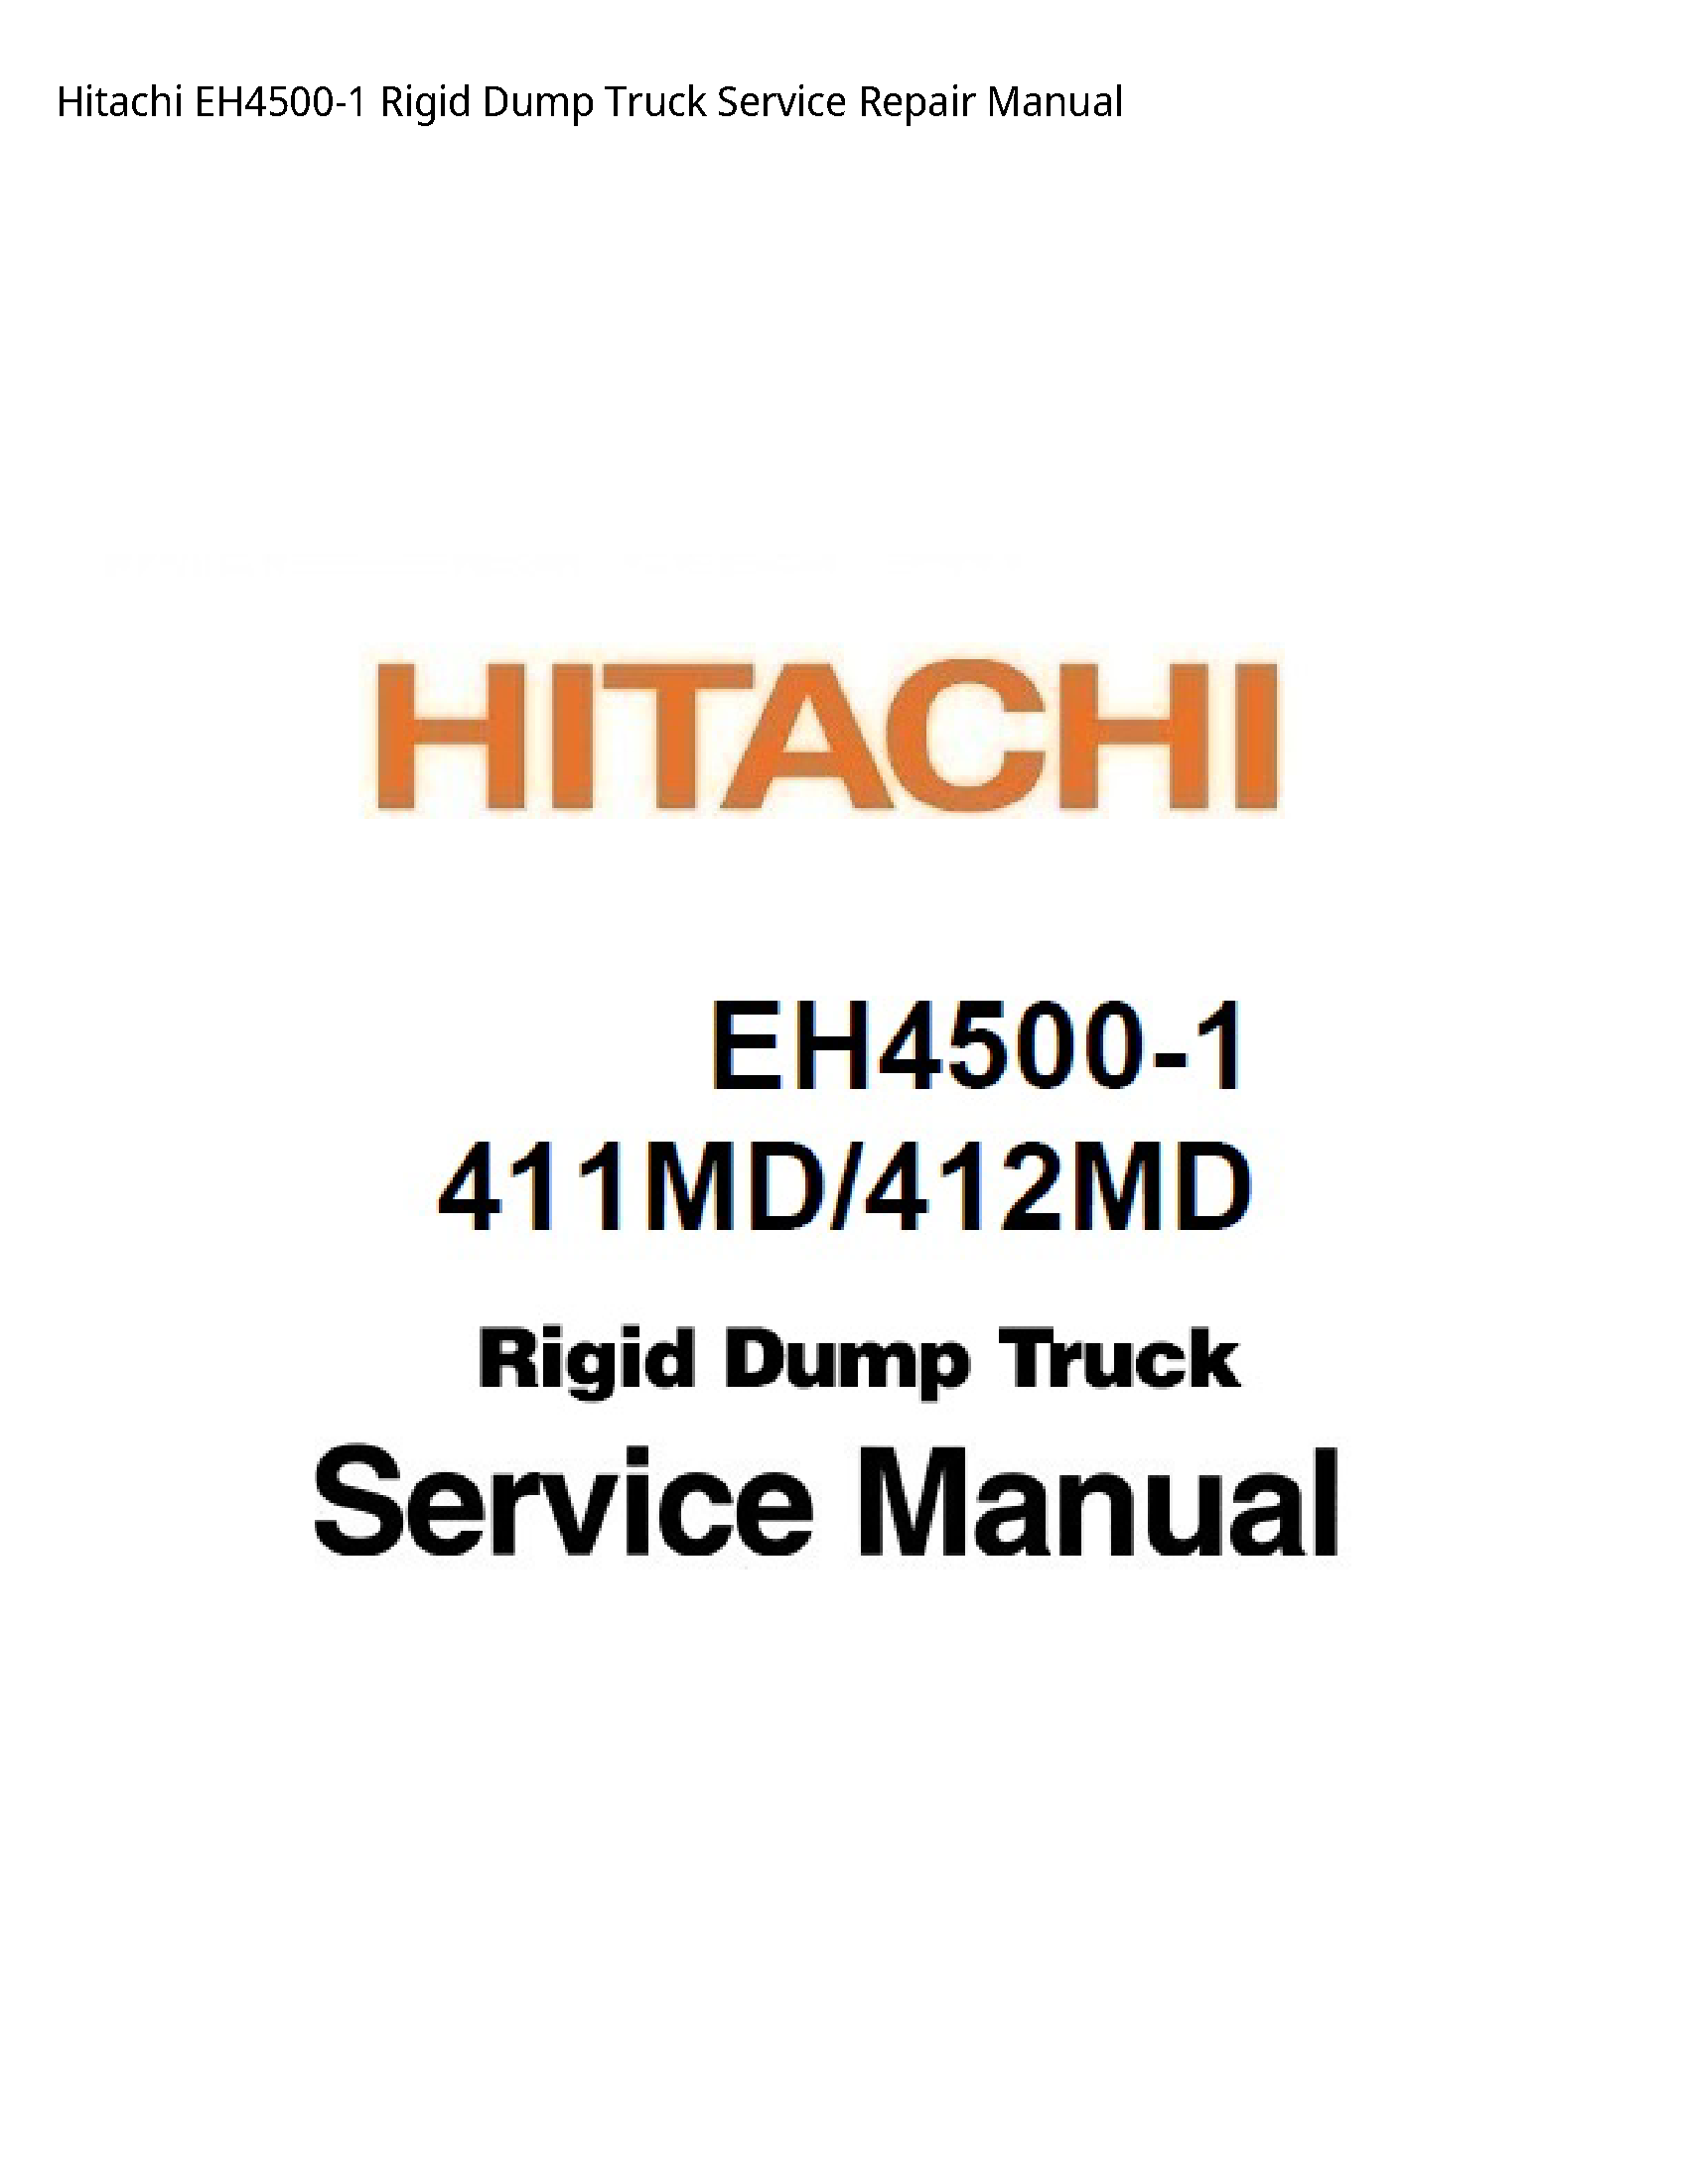 Hitachi EH4500-1 Rigid Dump Truck manual